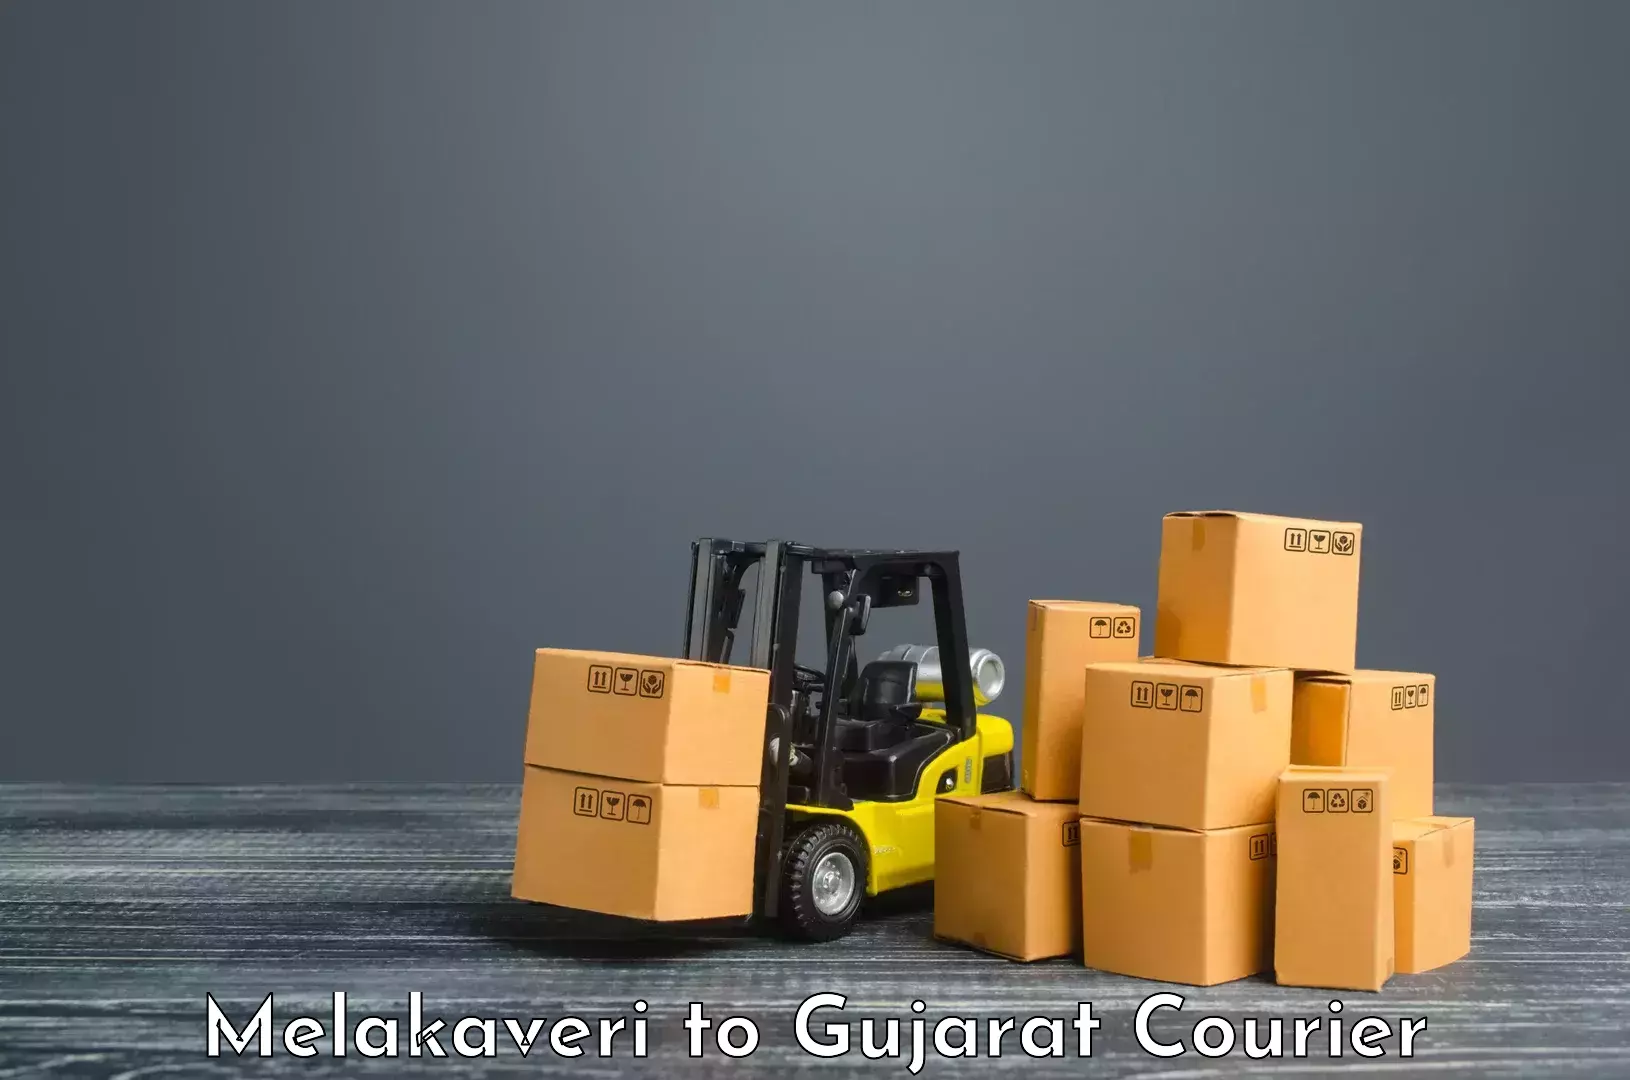 User-friendly courier app Melakaveri to Rajkot